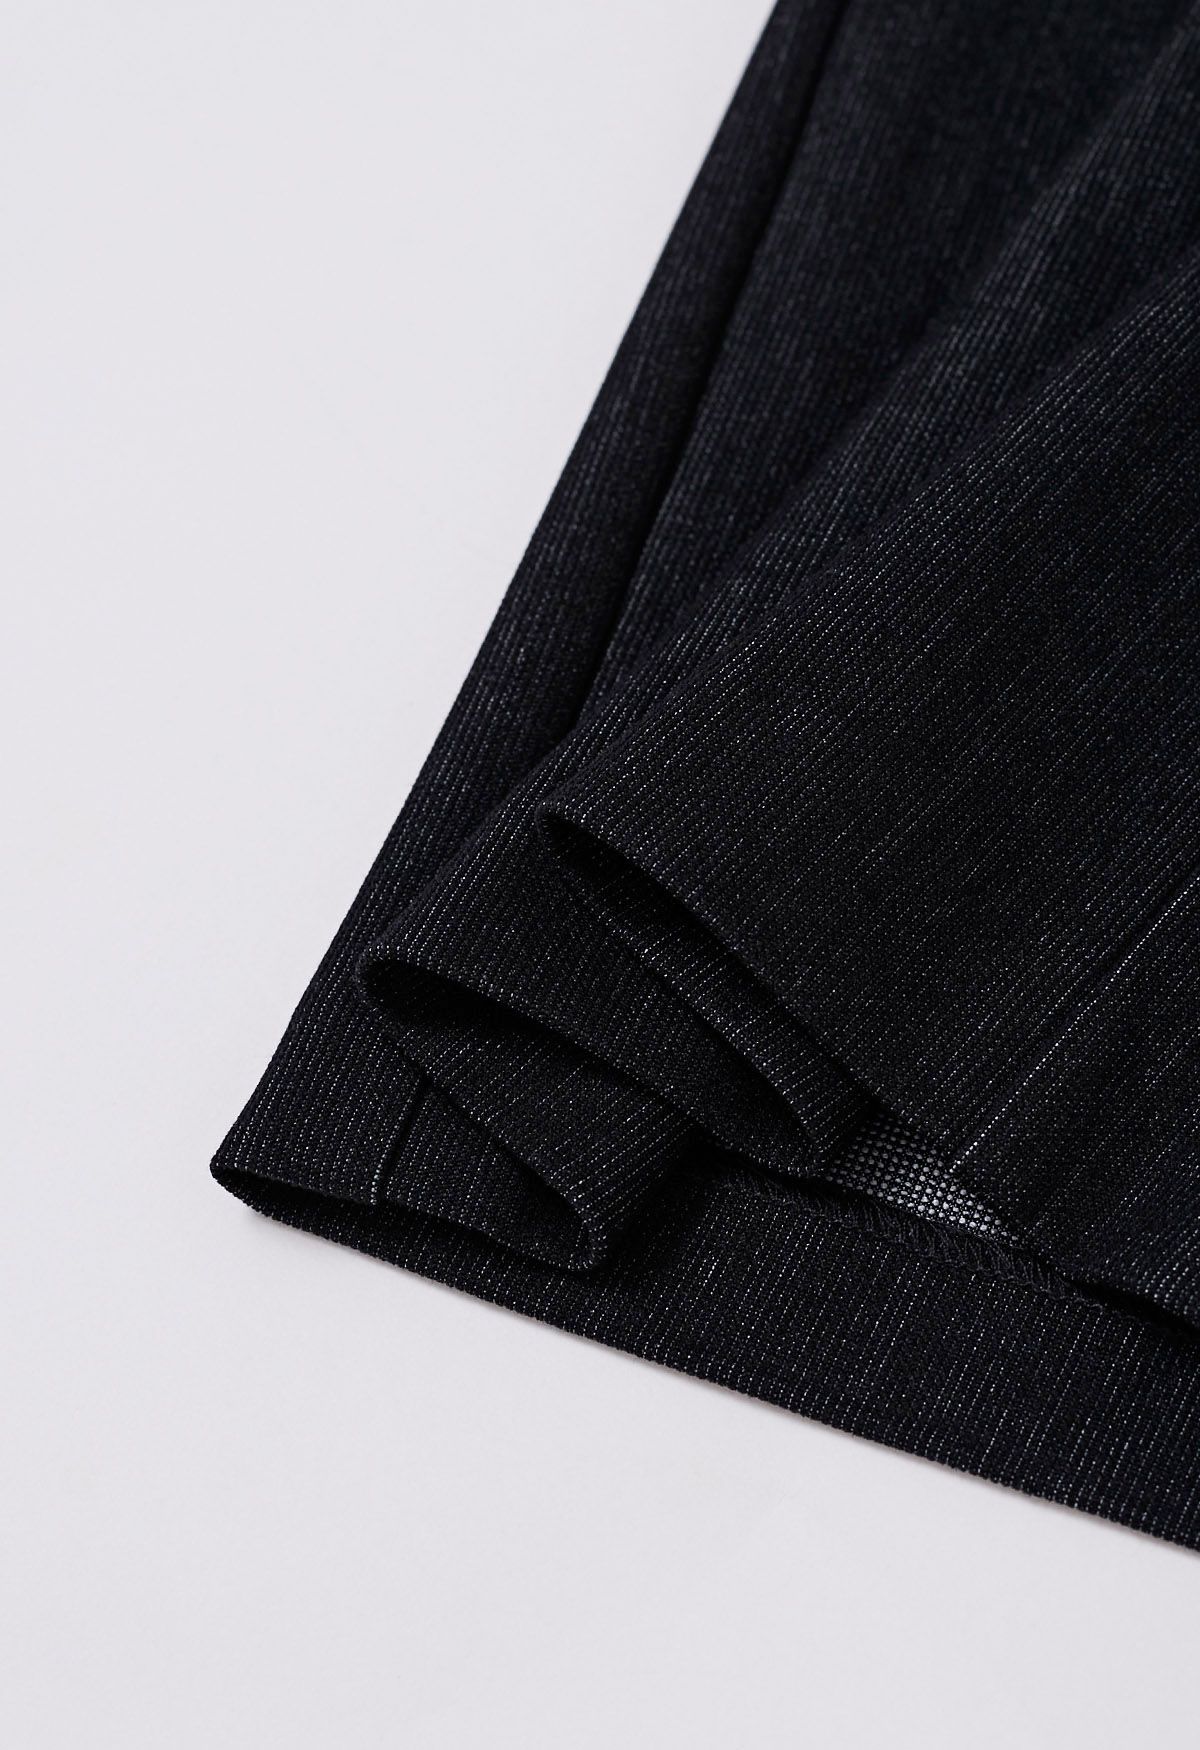 Pantalon large plissé confort sur mesure en noir